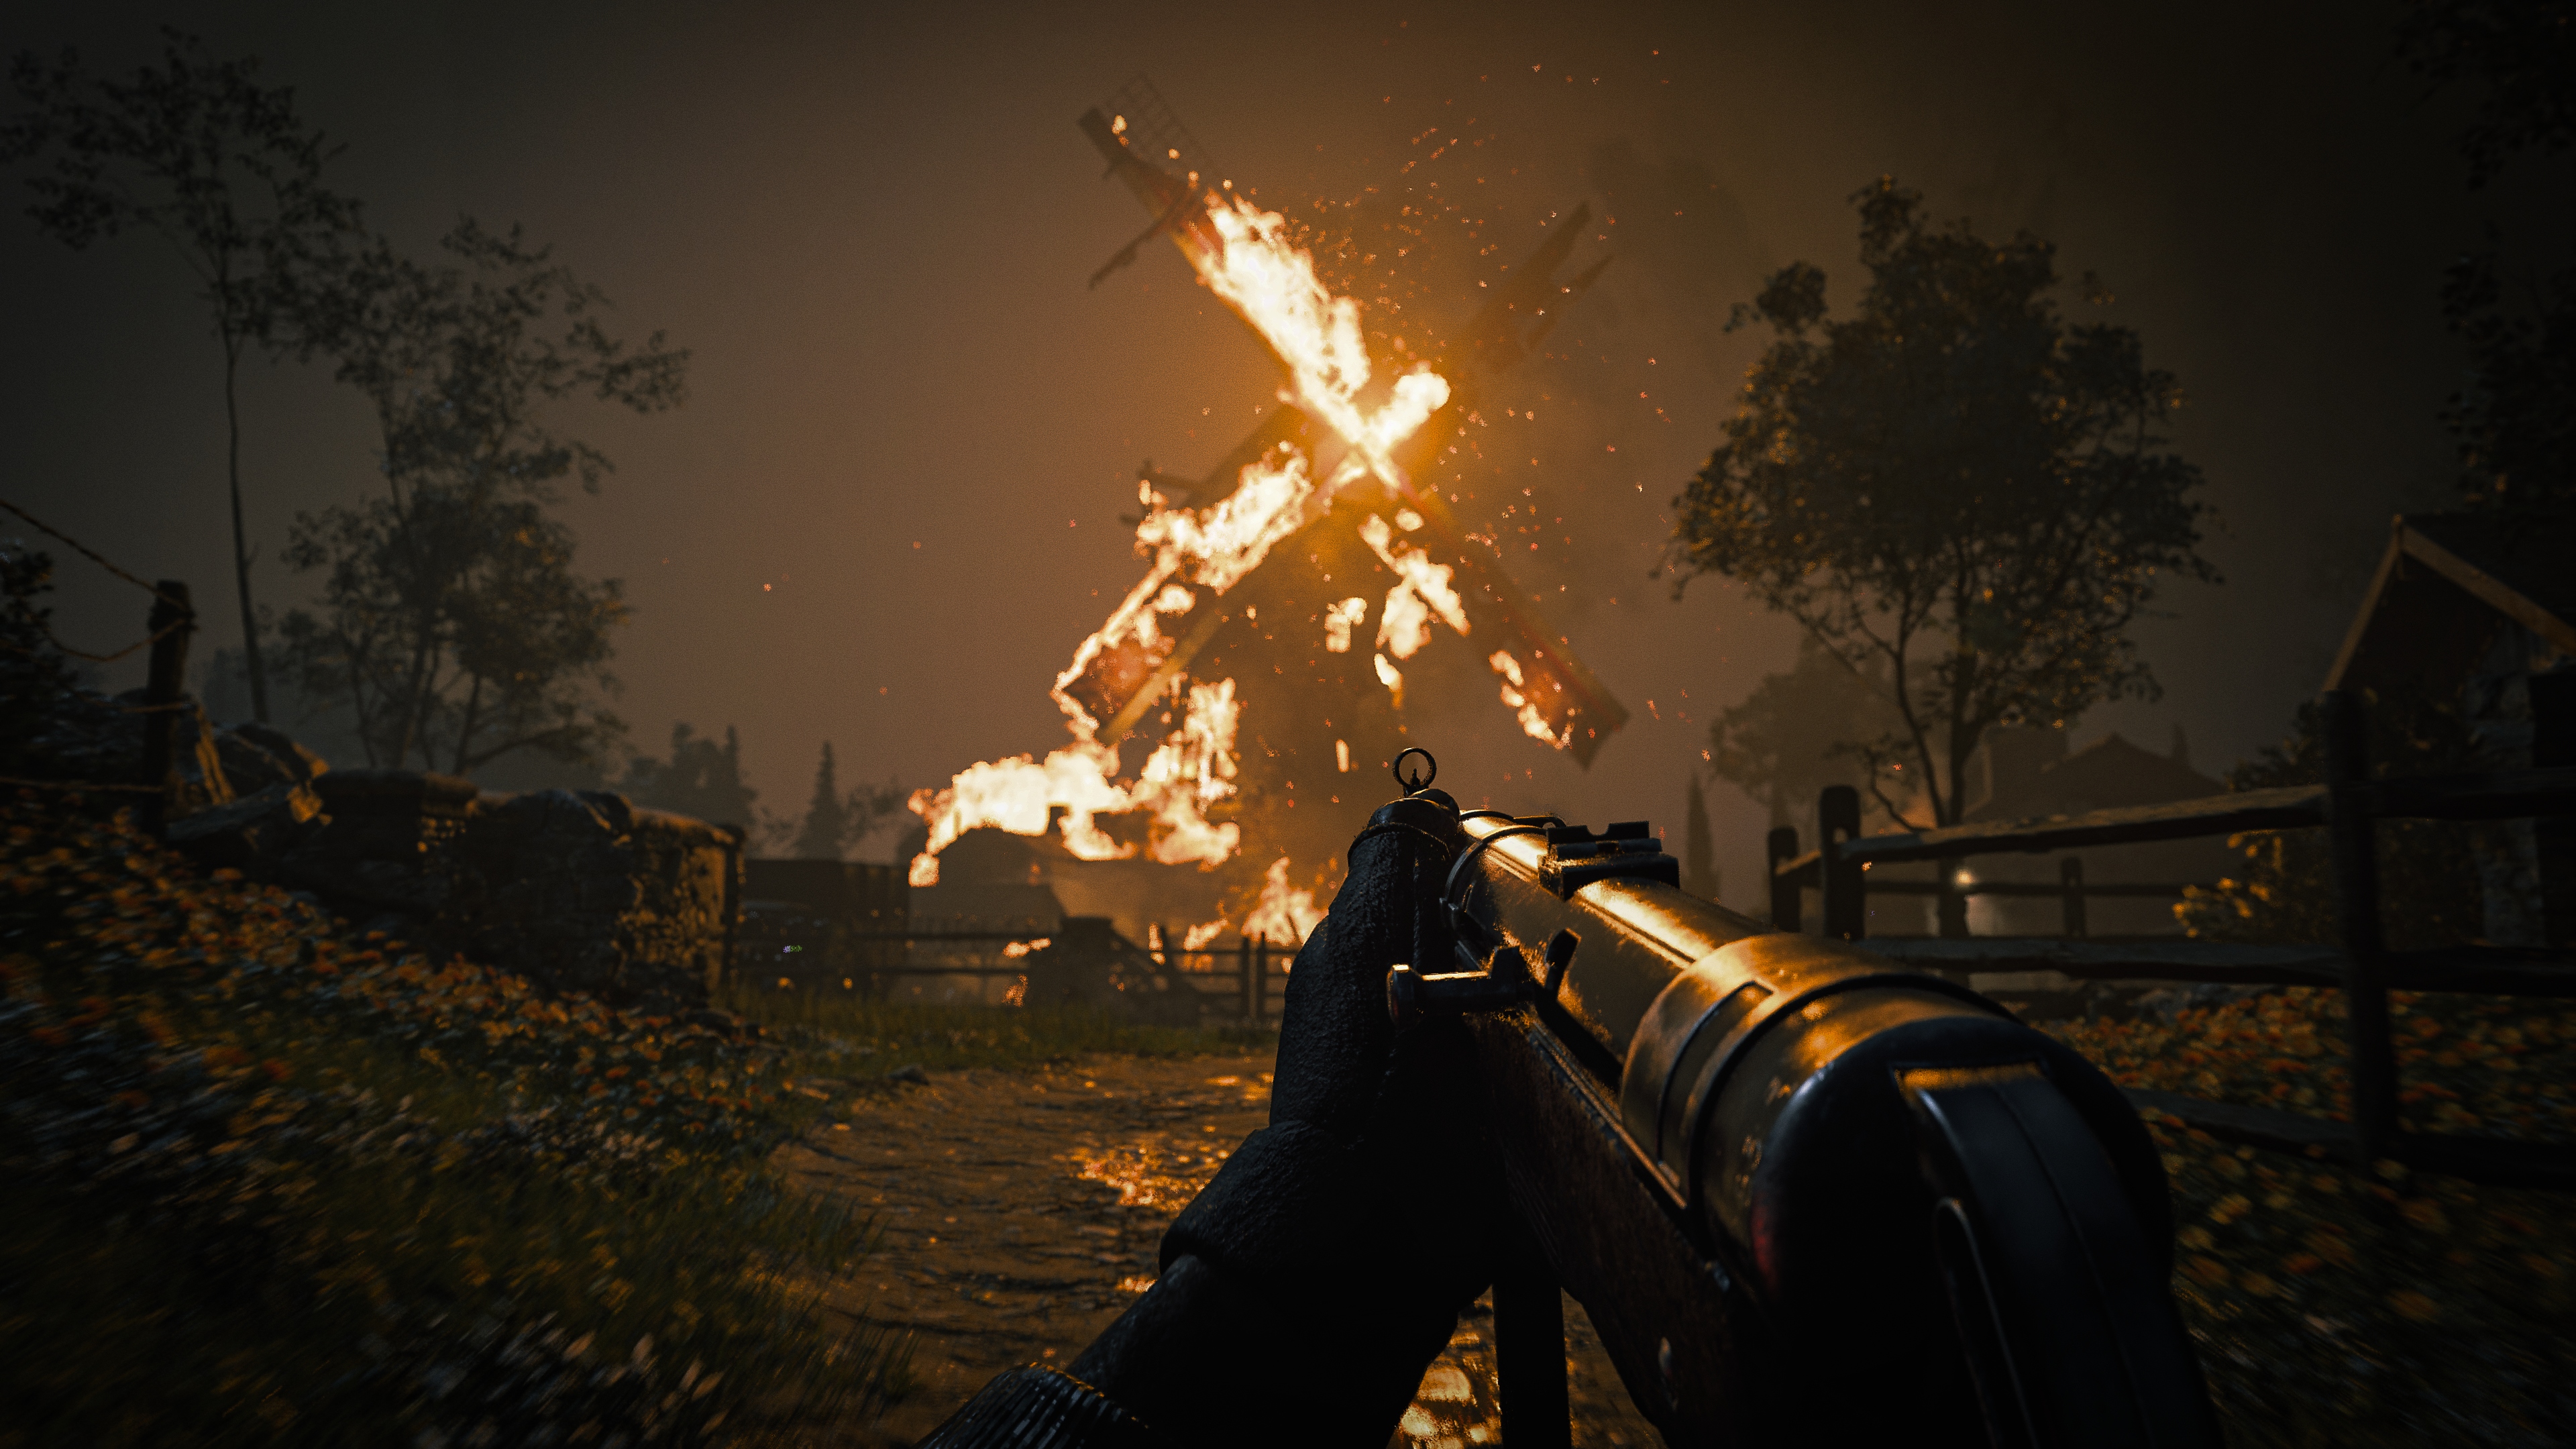 Call of Duty Vanguard – snímek obrazovky zachycující hořící větrný mlýn